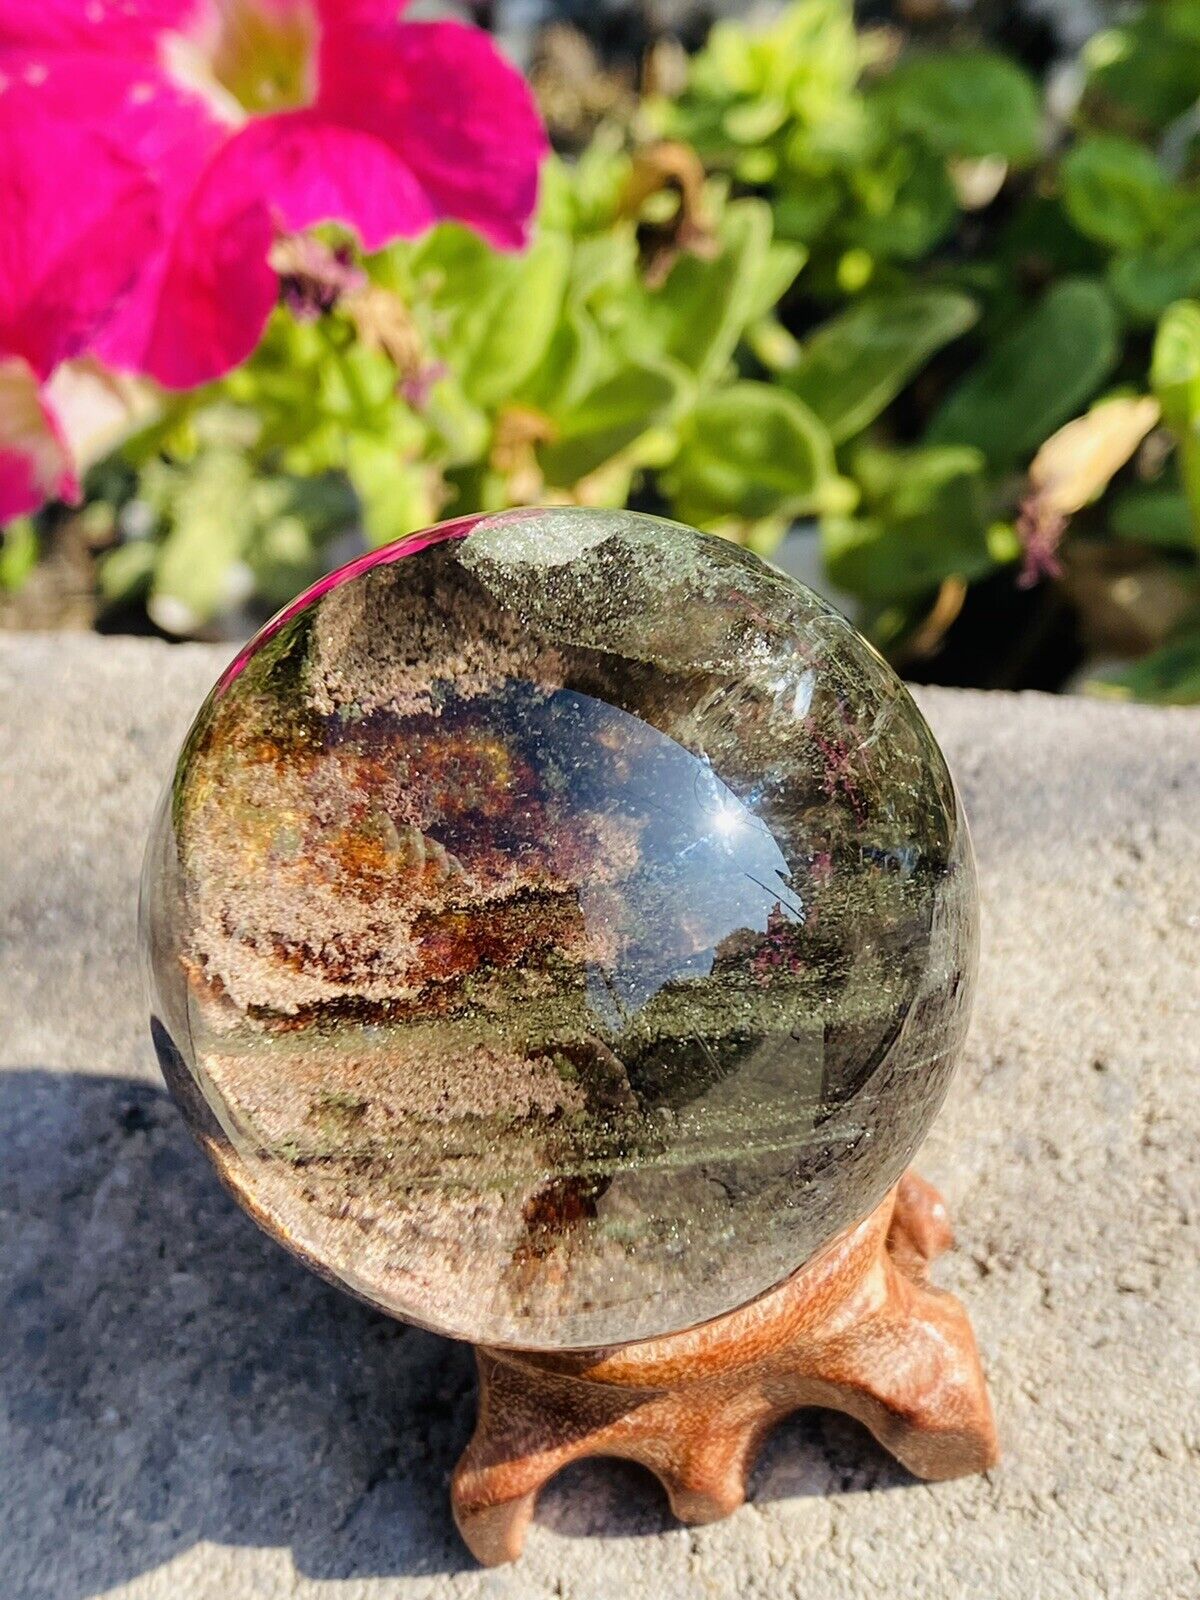 A very rare Melaleuca ghost ball, collectible